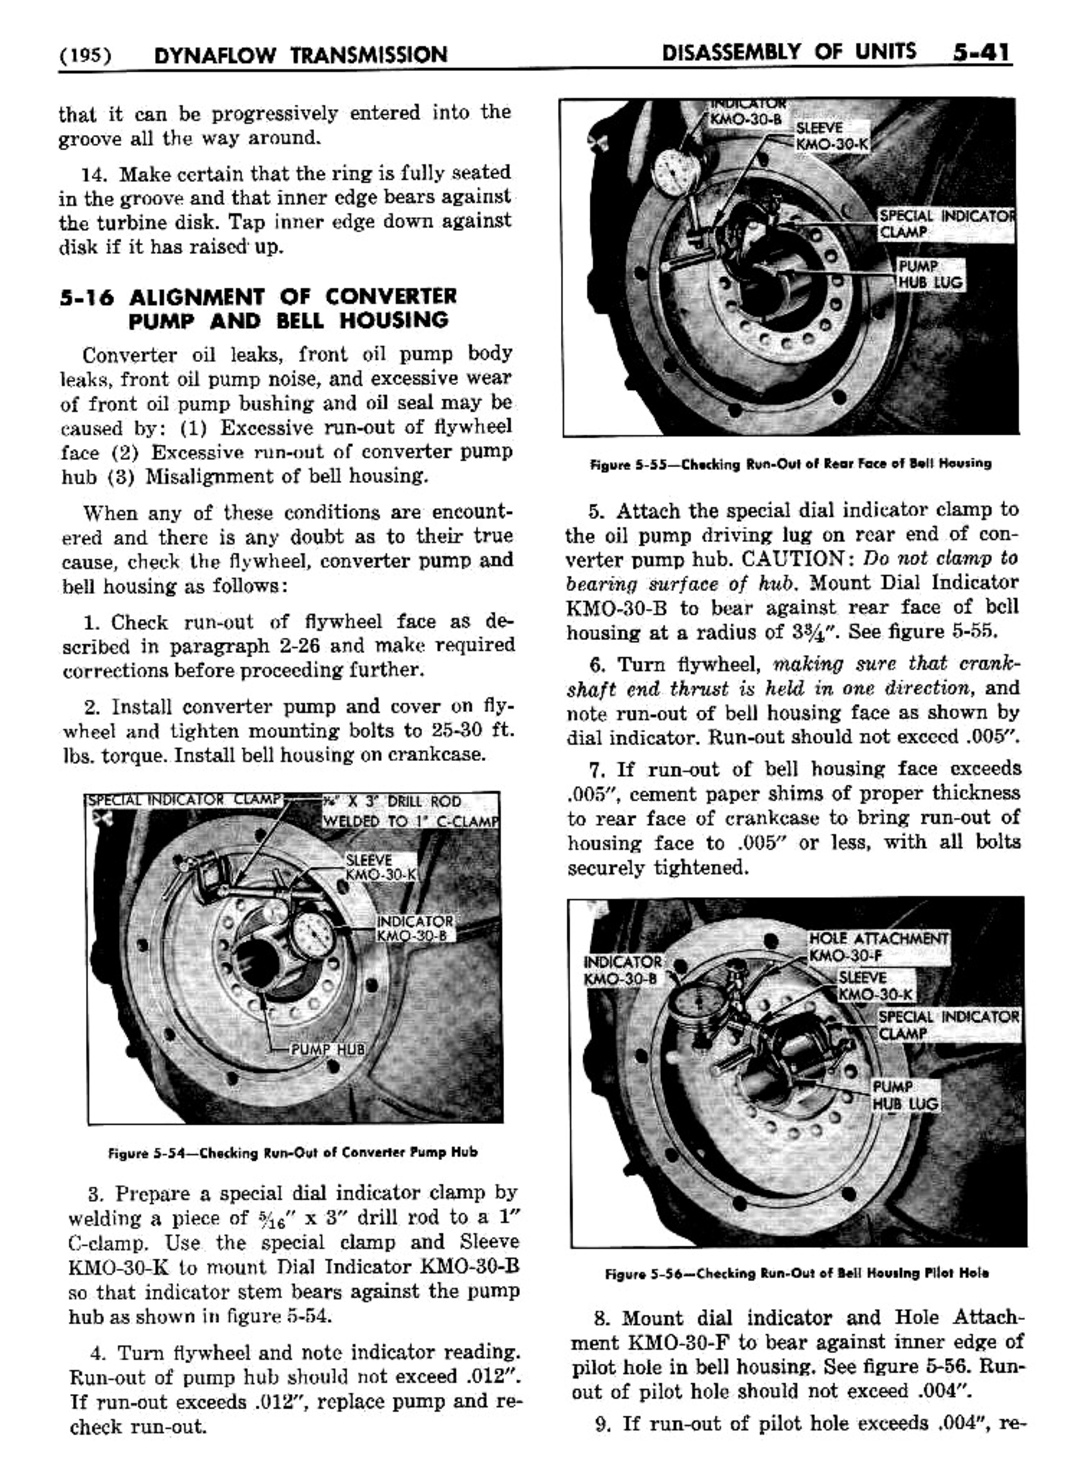 n_06 1954 Buick Shop Manual - Dynaflow-041-041.jpg